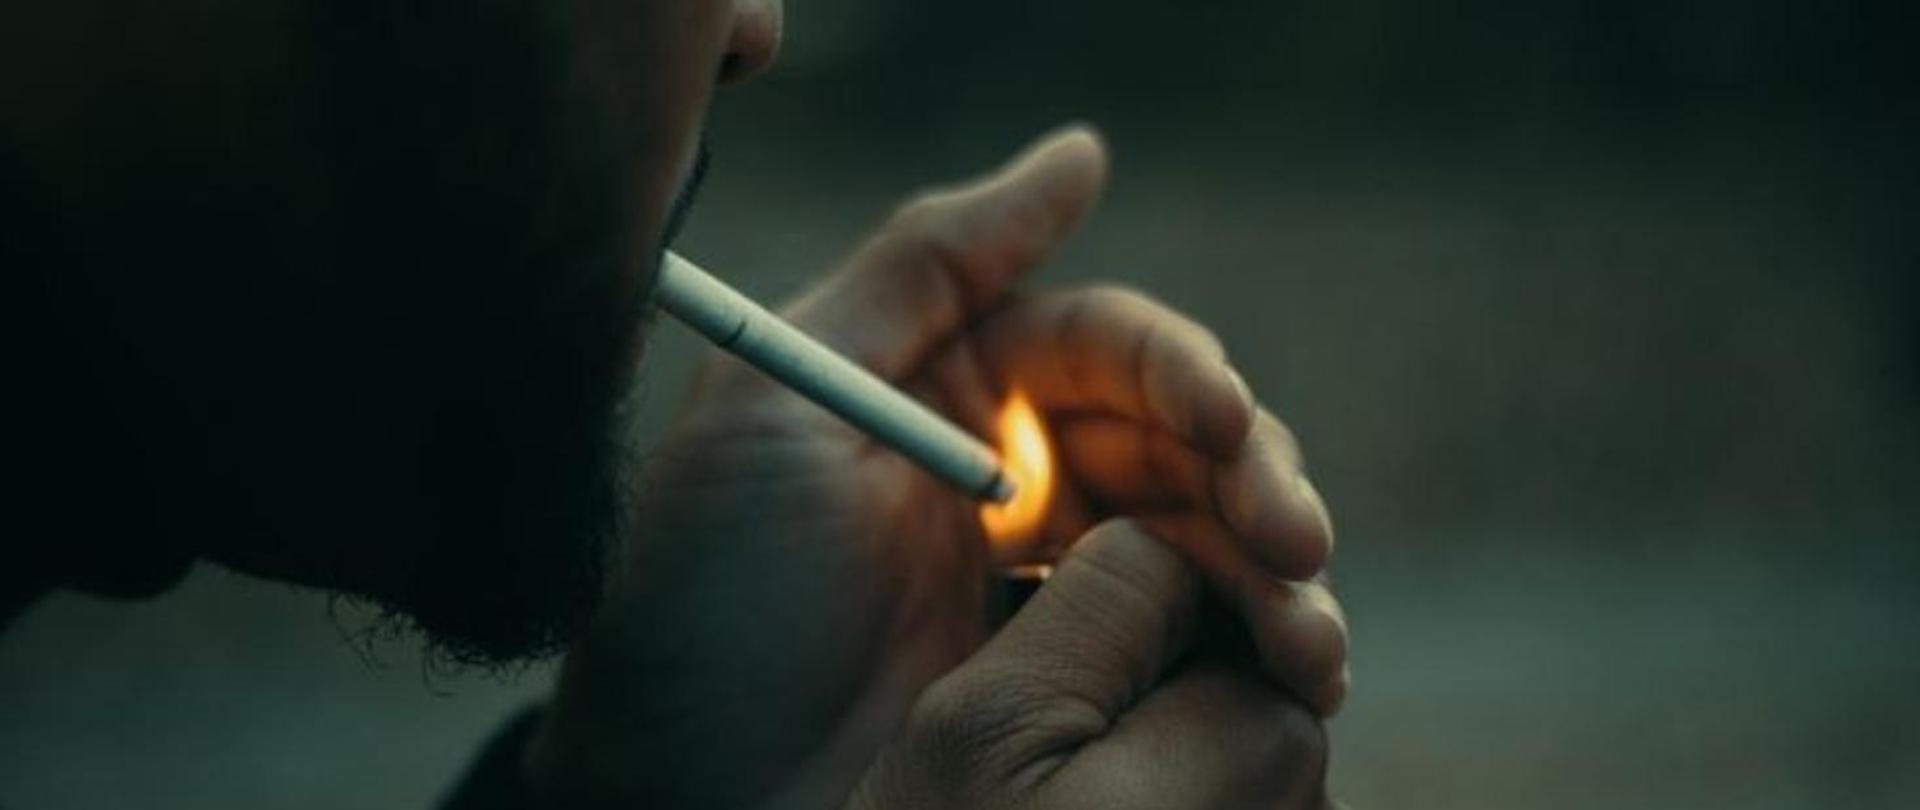 zdjęcie przedstawia mężczyznę zapalającego papierosa